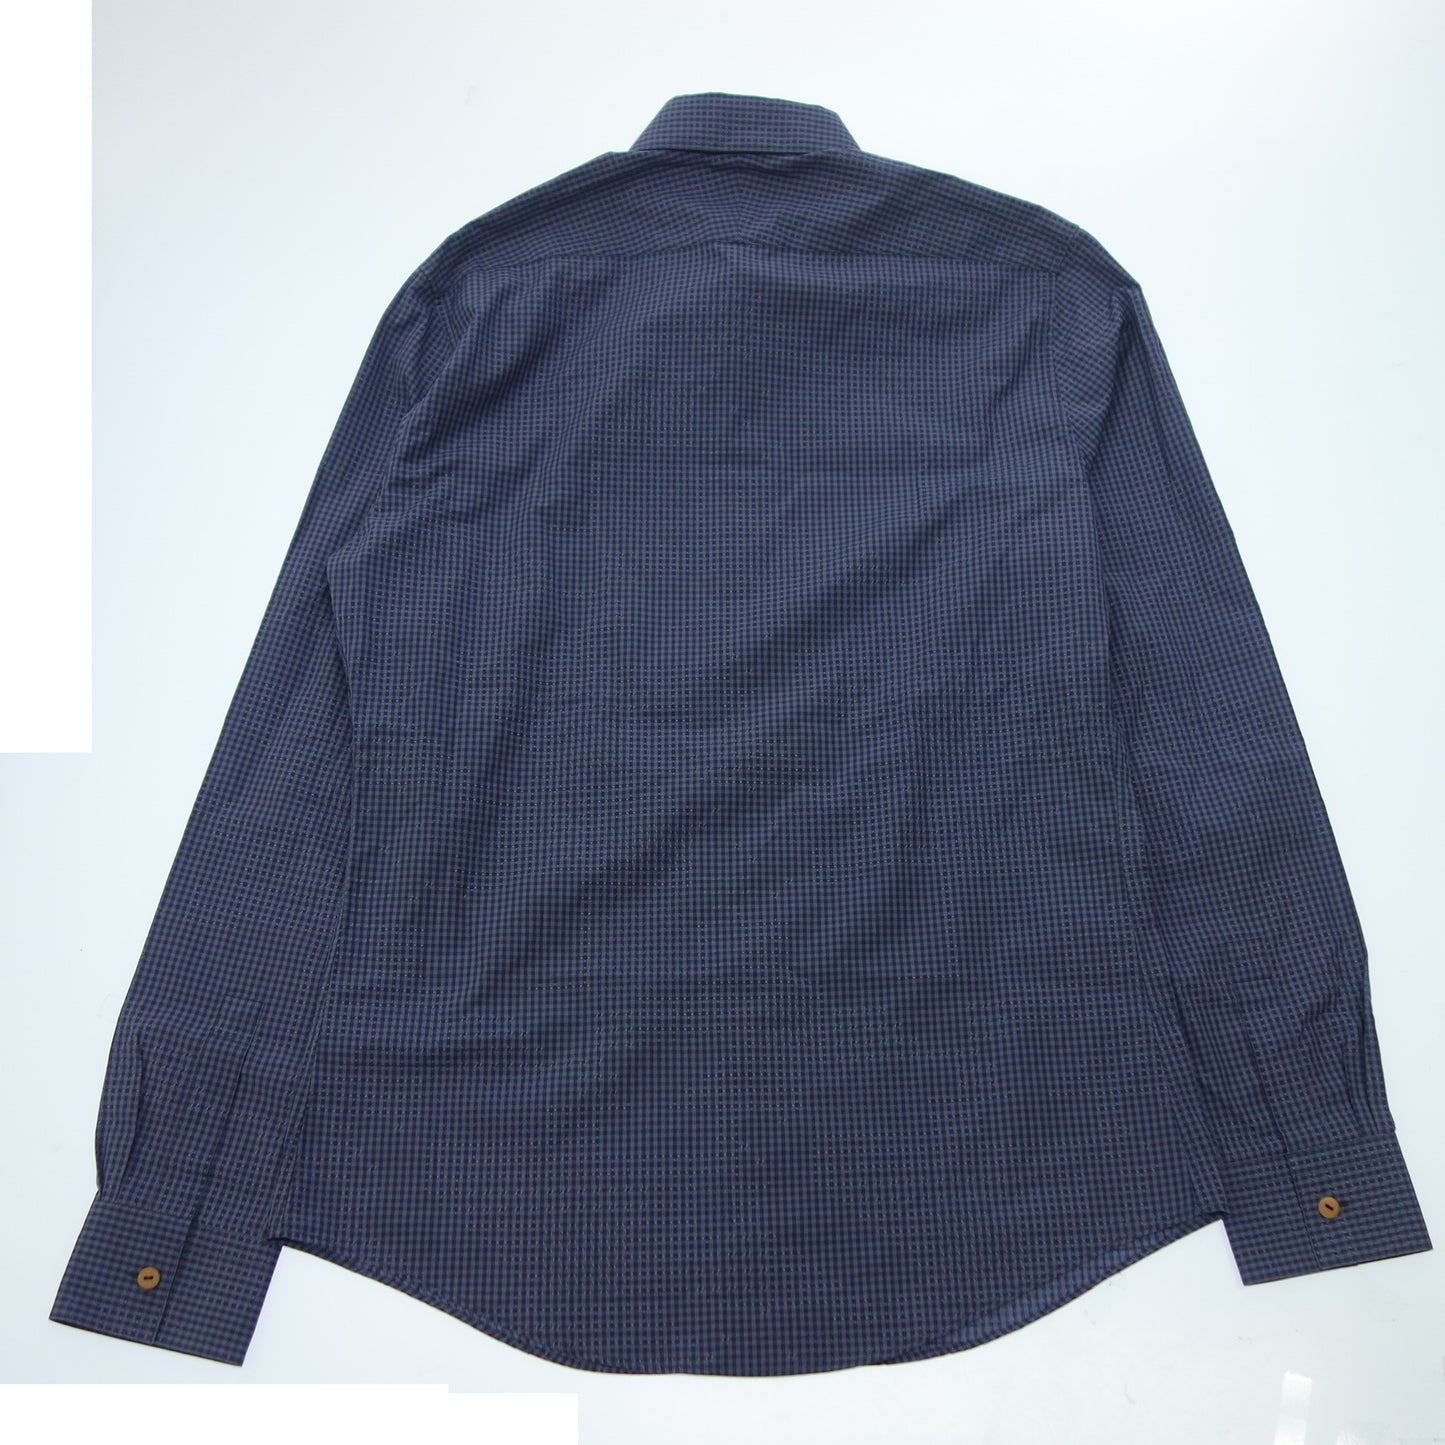 Hermes long sleeve shirt gingham check 39 men's blue HERMES [AFB20] [Used] 